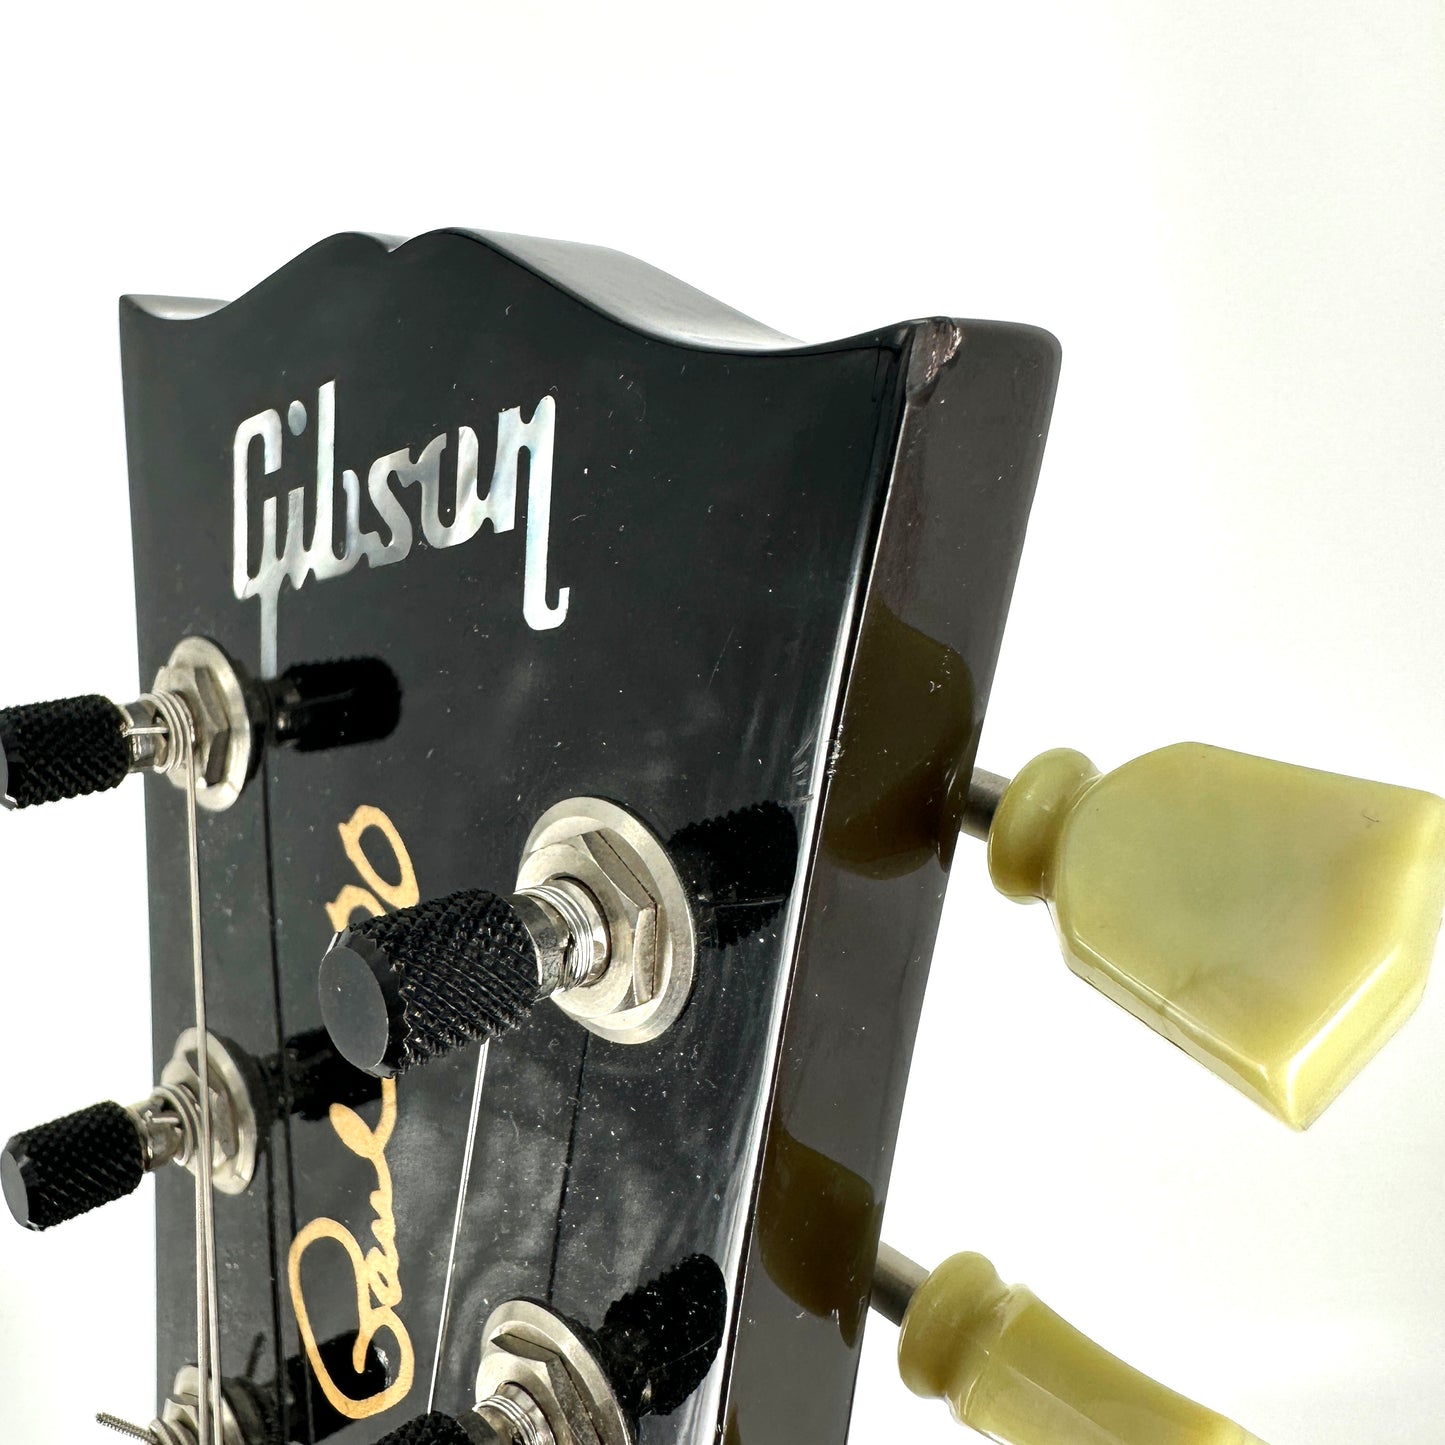 2015 Gibson Les Paul Less Plus – Desert Burst